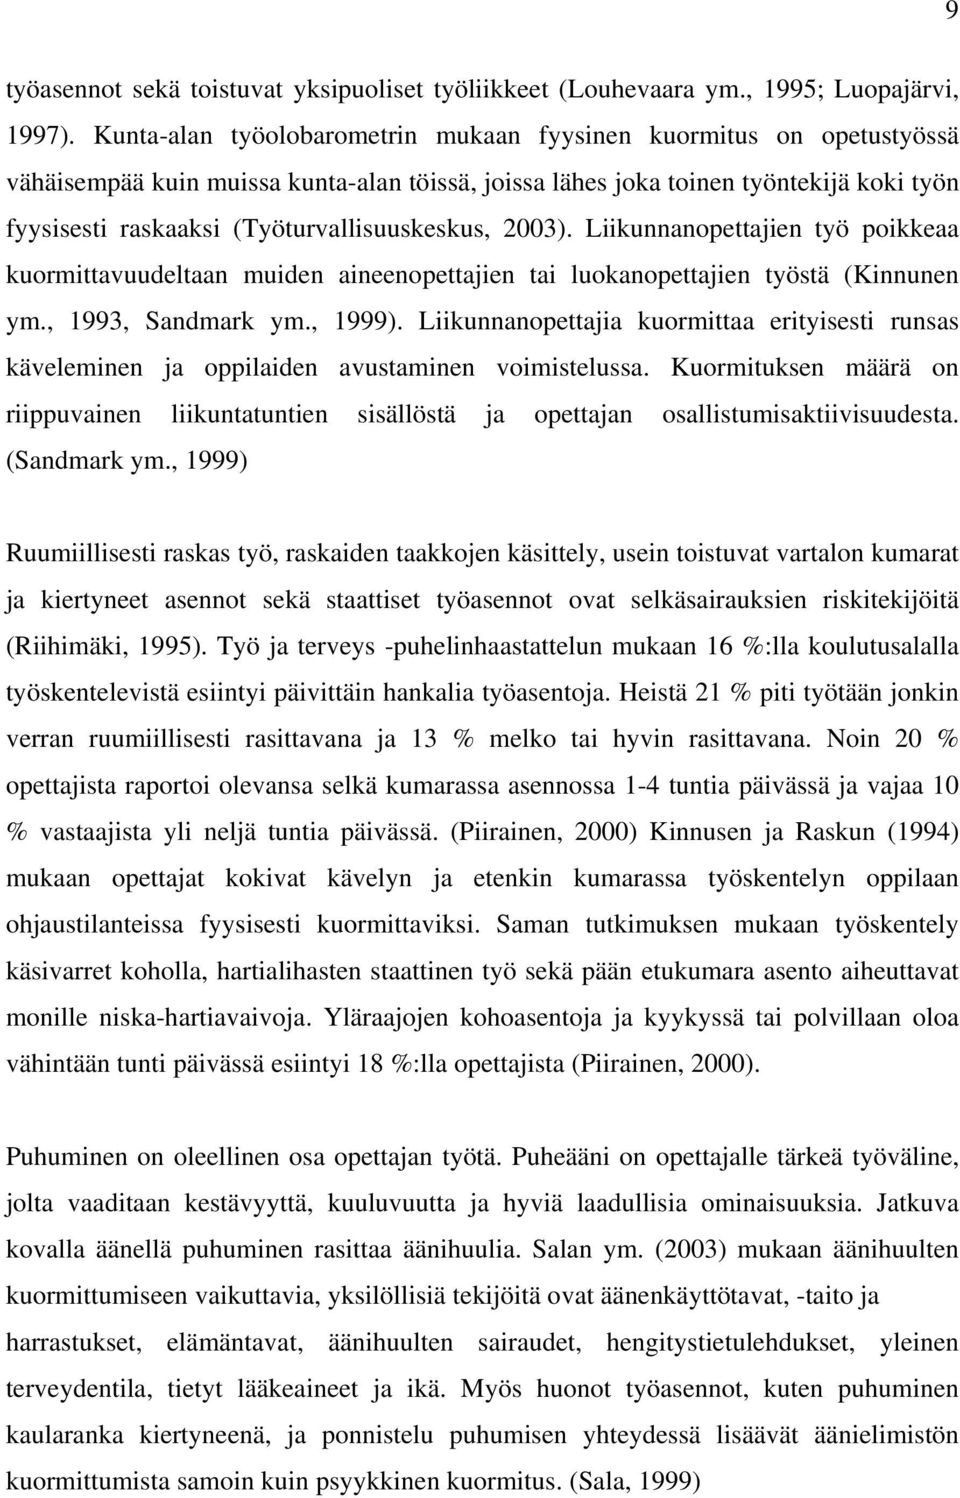 (Työturvallisuuskeskus, 2003). Liikunnanopettajien työ poikkeaa kuormittavuudeltaan muiden aineenopettajien tai luokanopettajien työstä (Kinnunen ym., 1993, Sandmark ym., 1999).